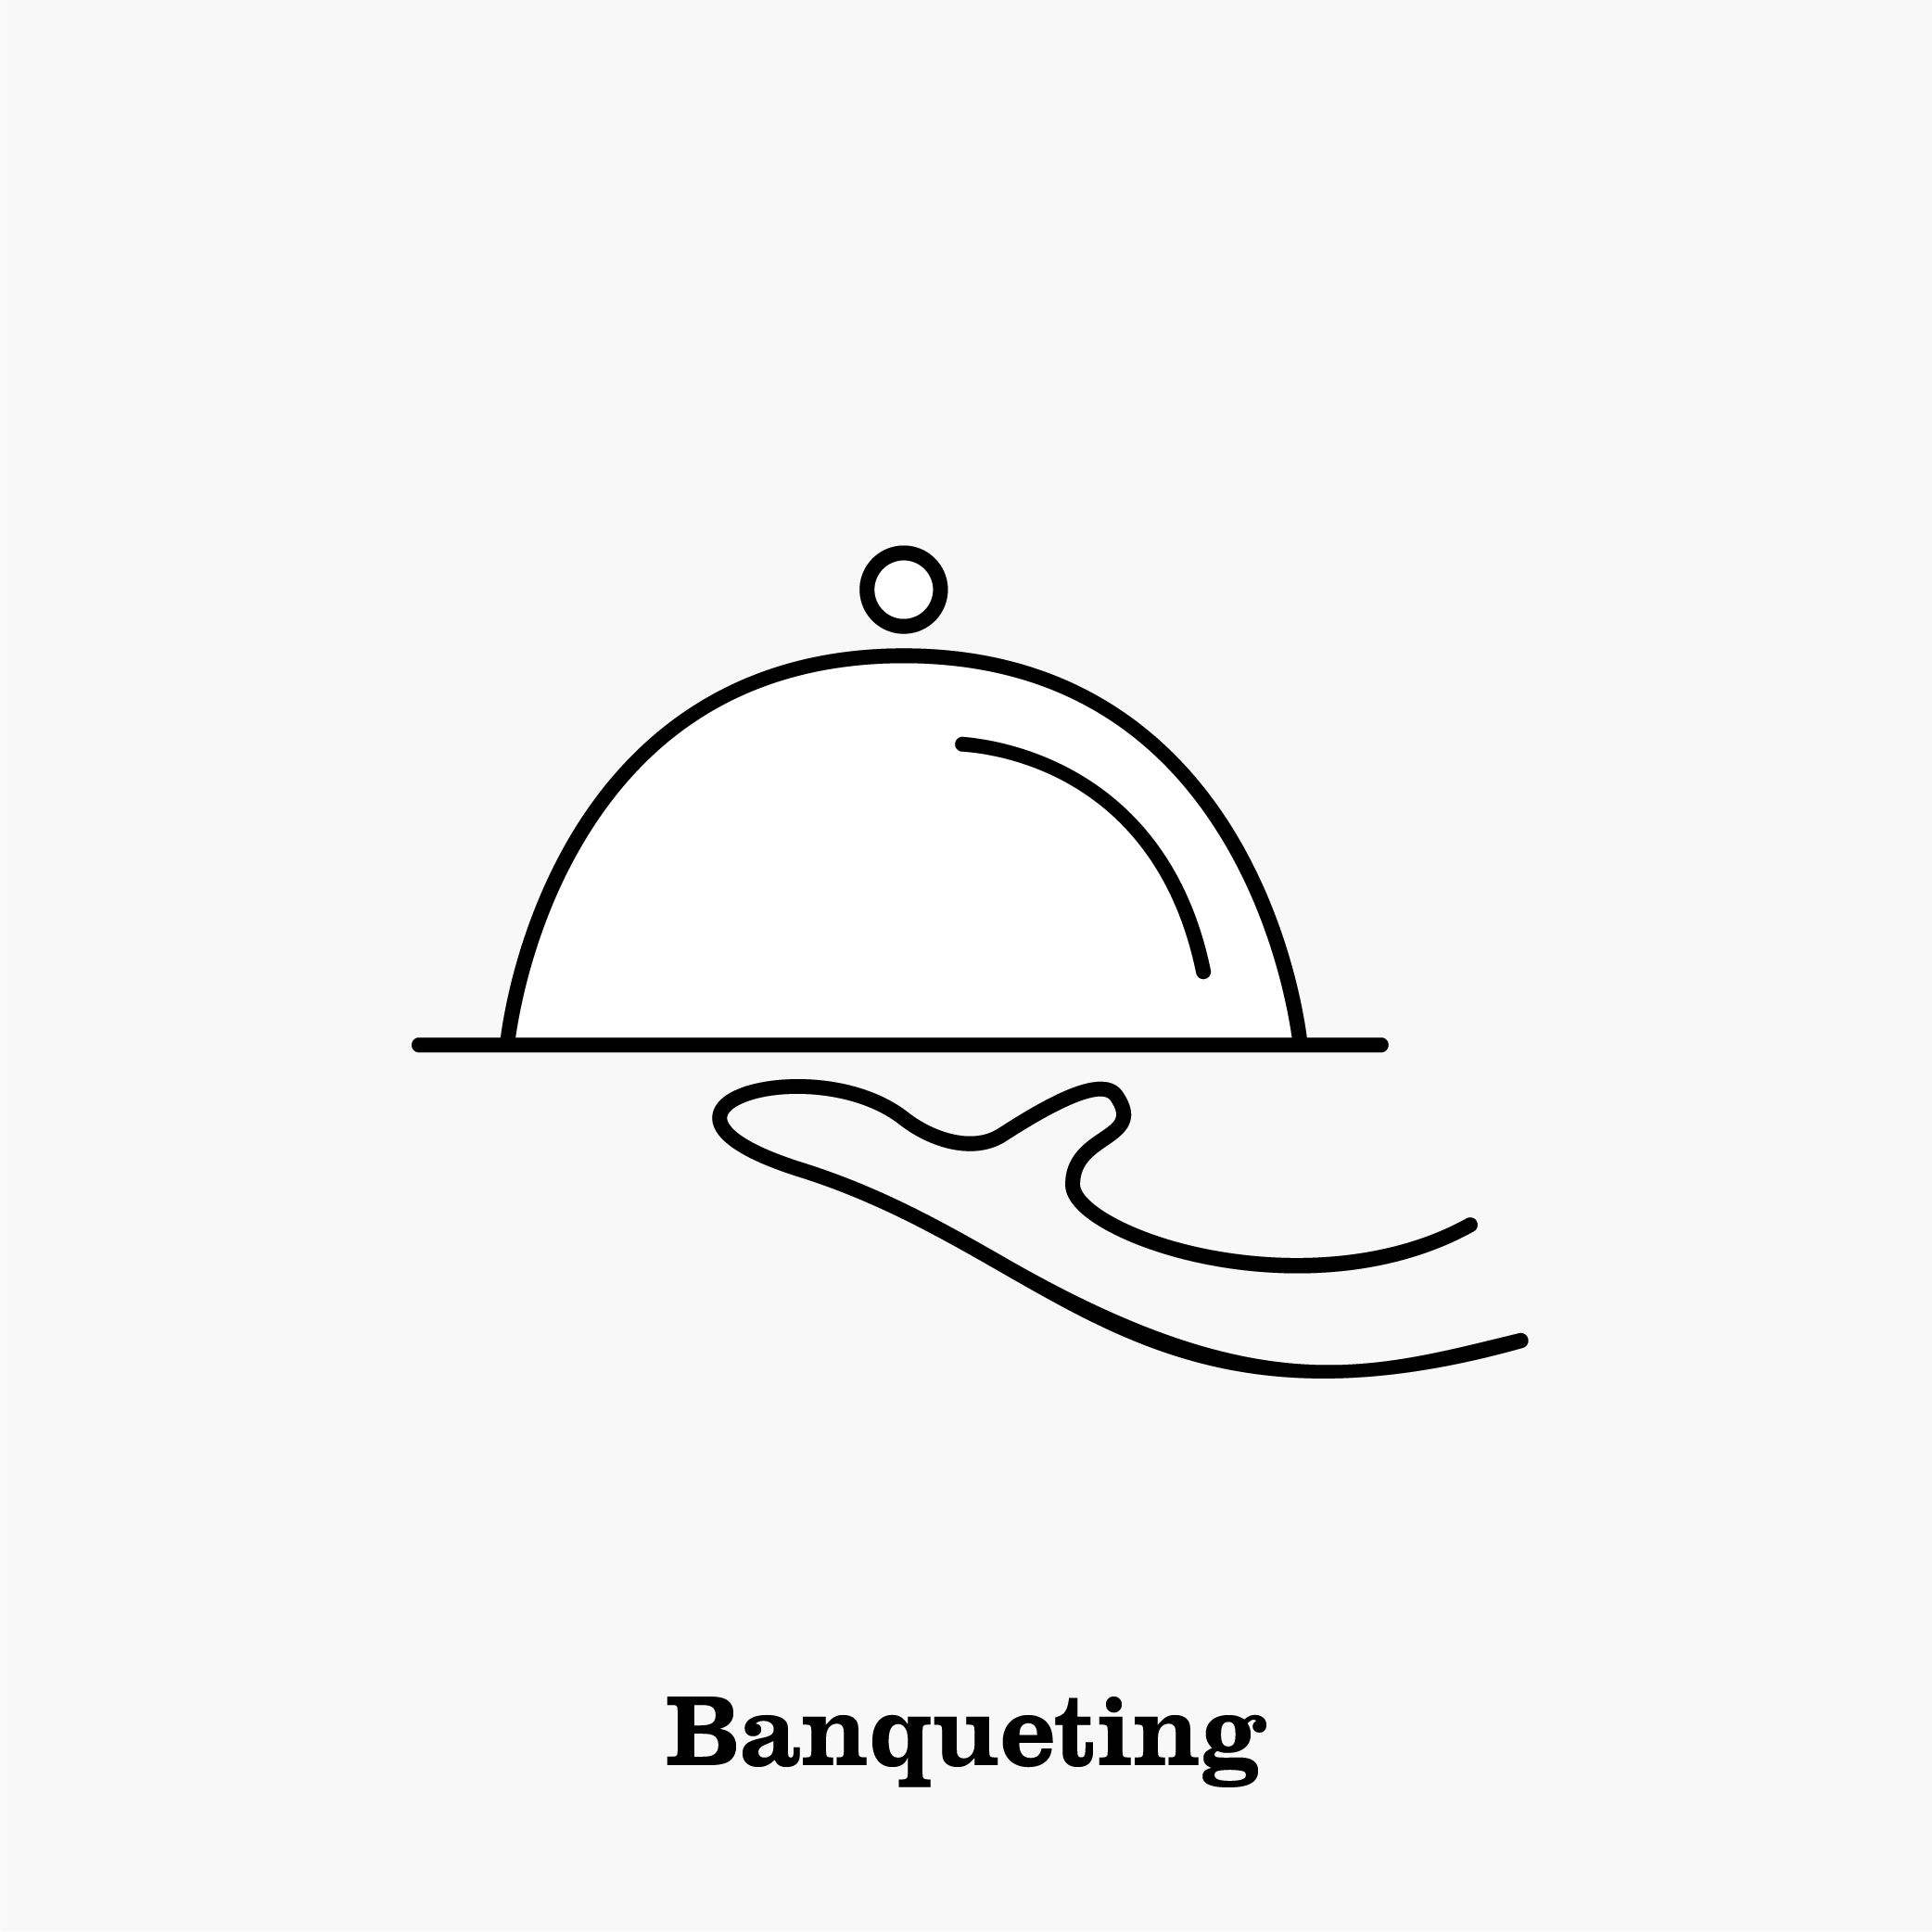 Banqueting